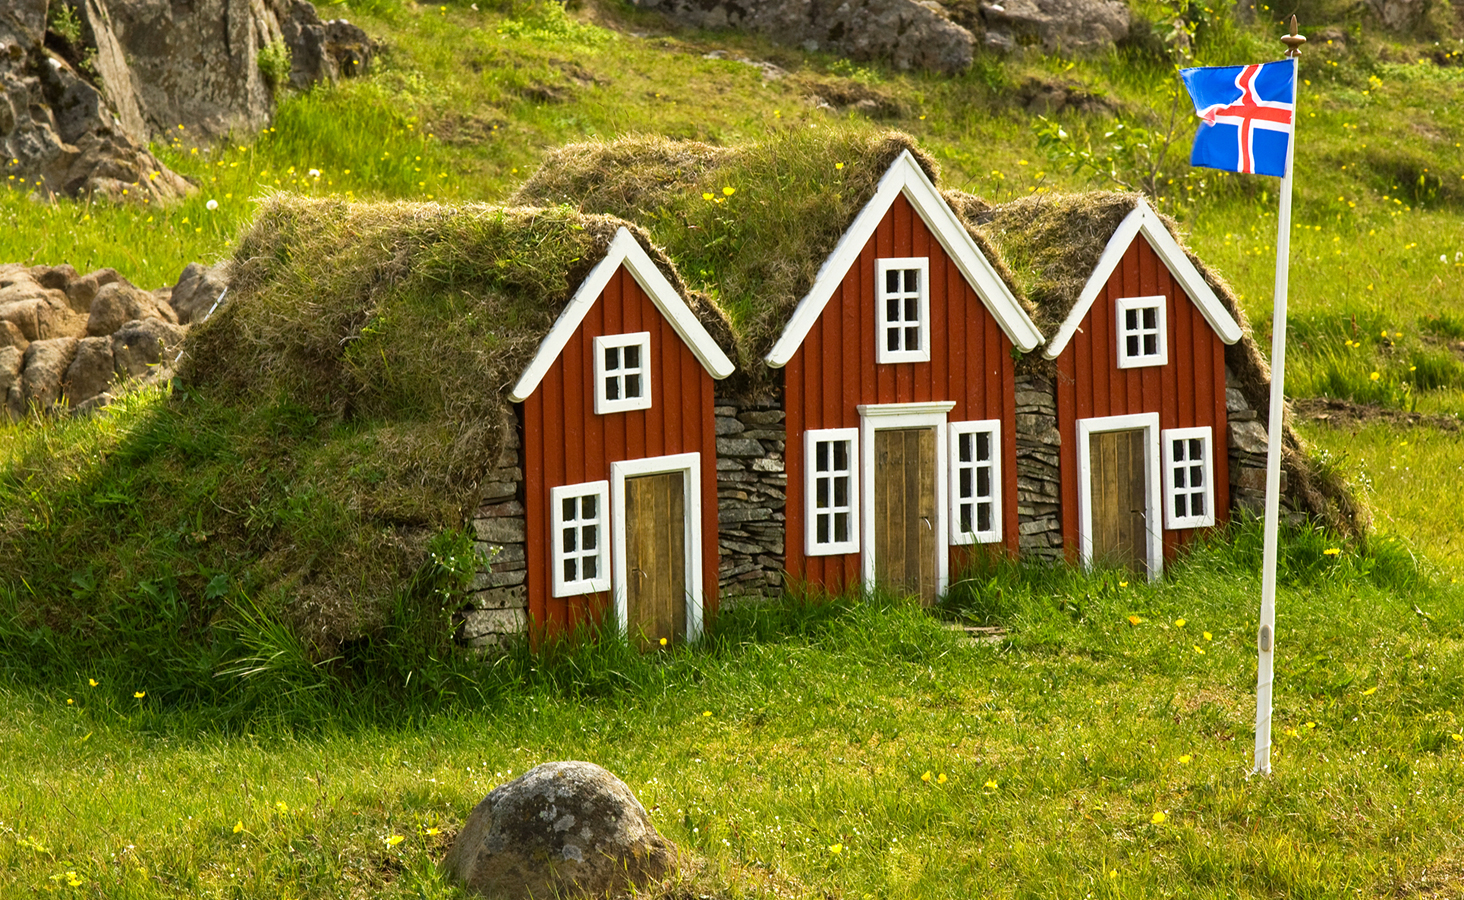 Island - tradiční obydlí z kamení a drnů